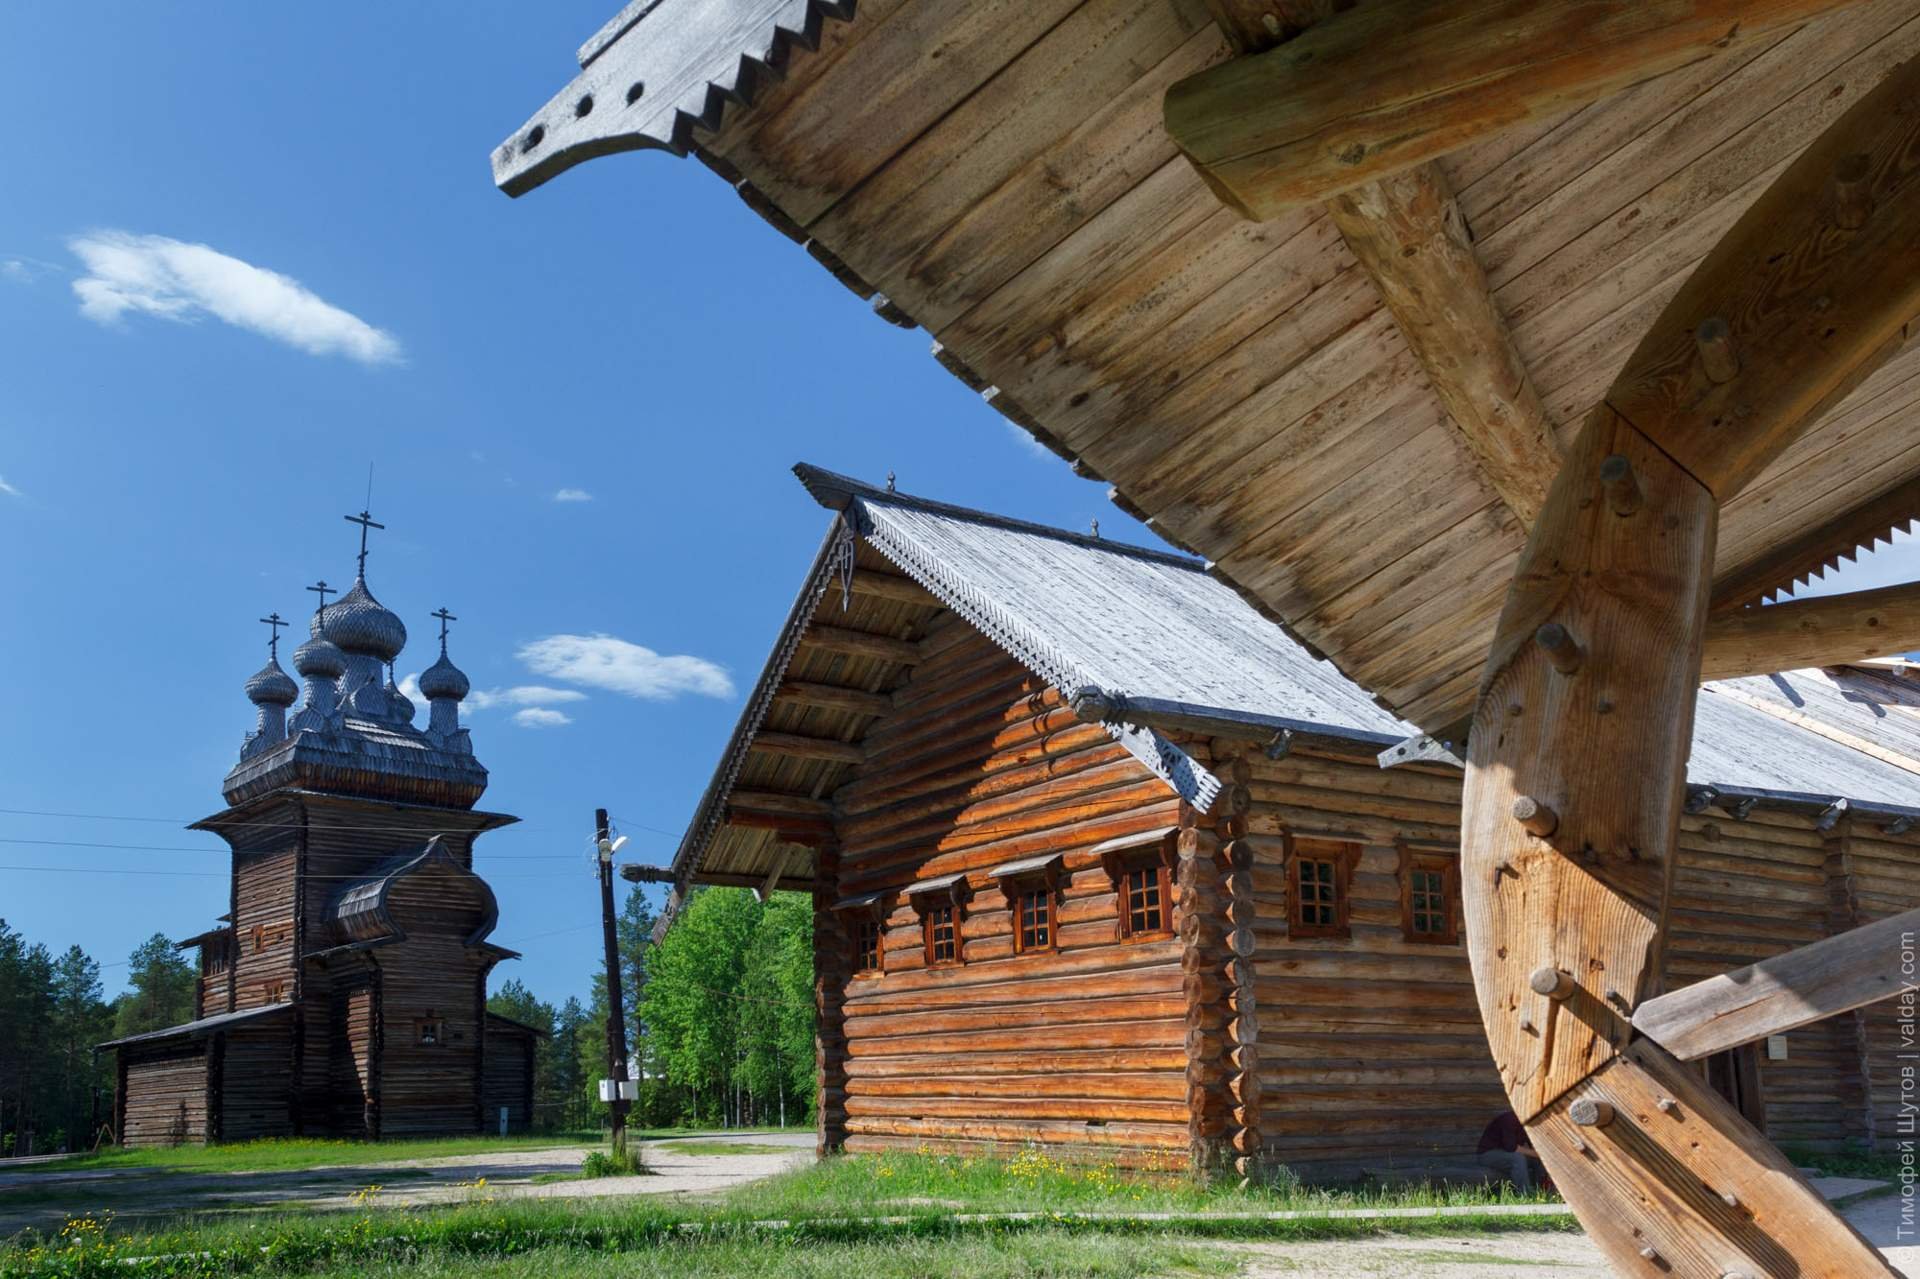 Архангельск музей деревянного зодчества